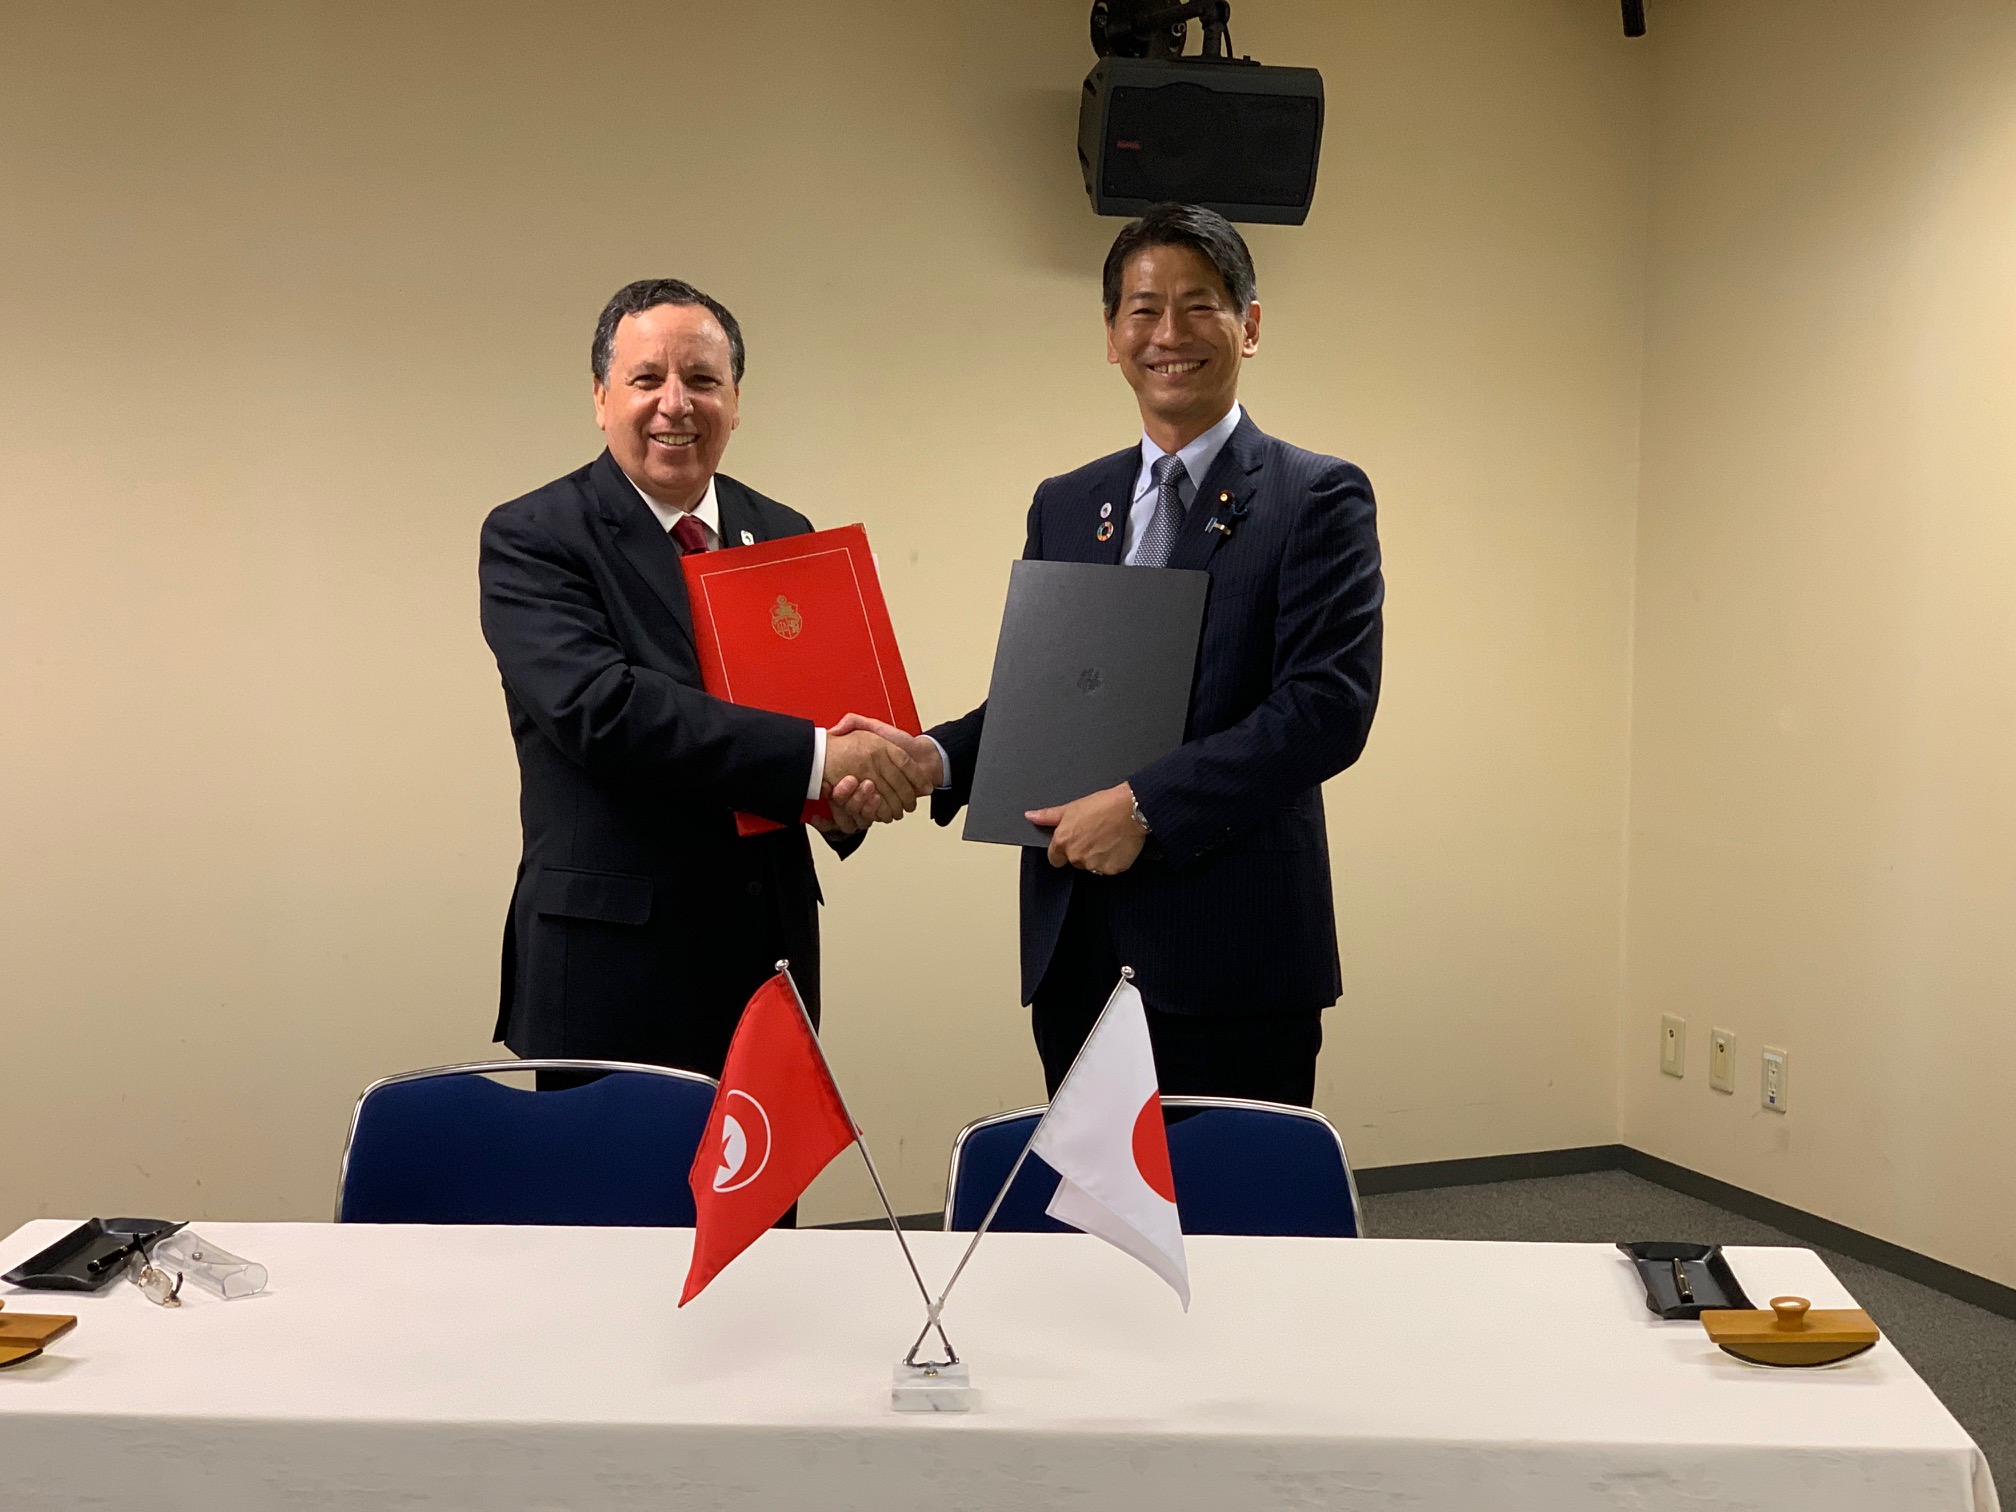 Le Japon accorde un don d’environ 8 millions de DT à la Tunisie pour l’installation d’un système de surveillance et de protection de haute technologie